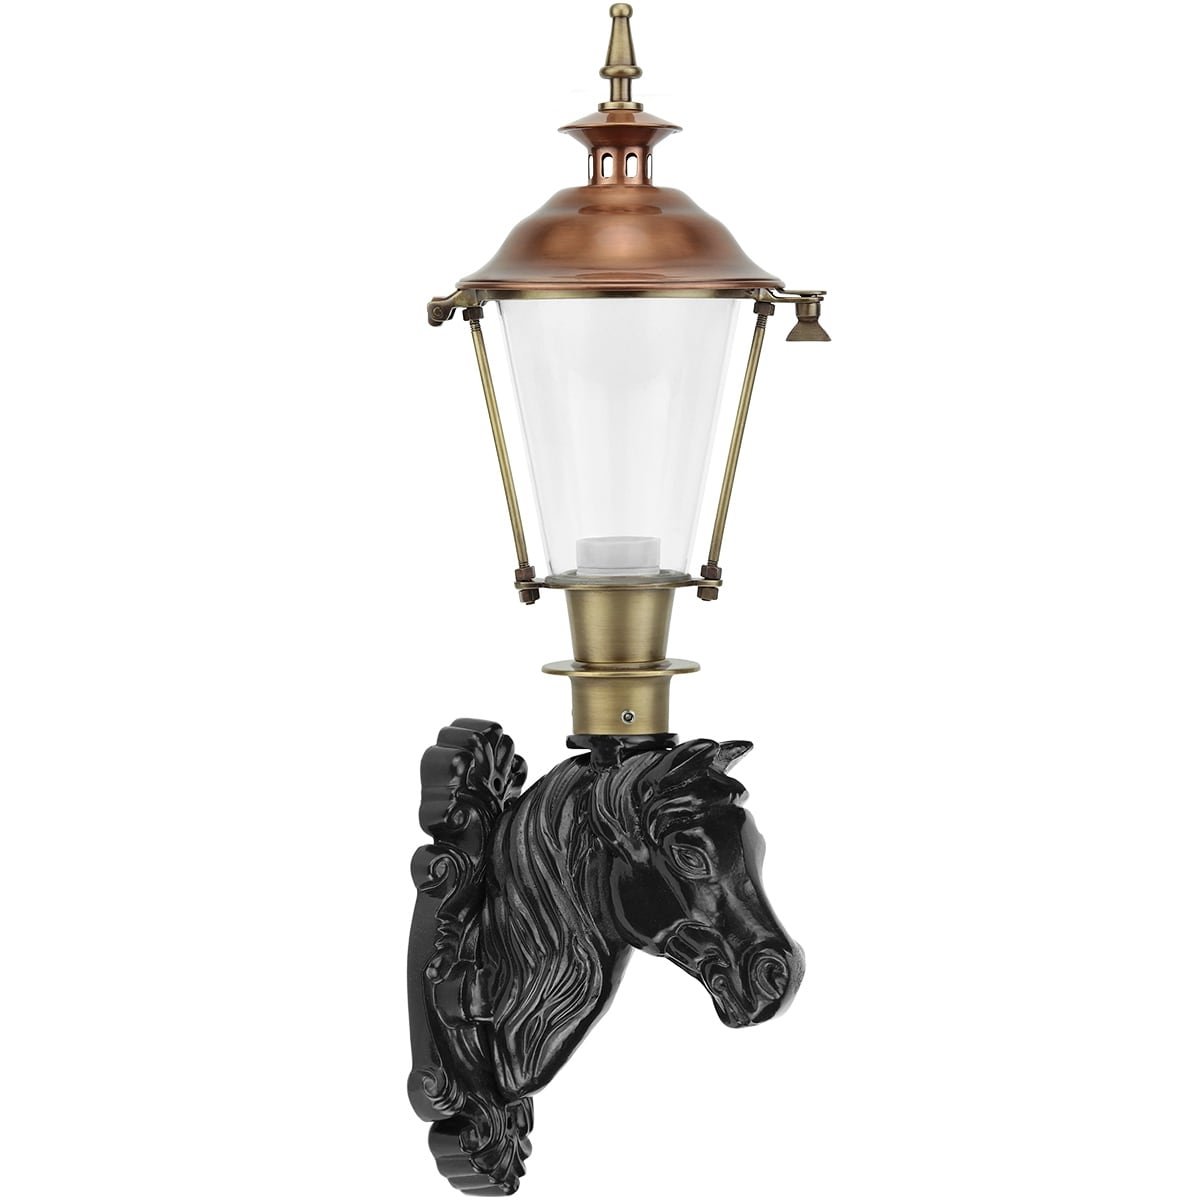 Lampe cheval Kornhorn vieux cuivre - 72 cm